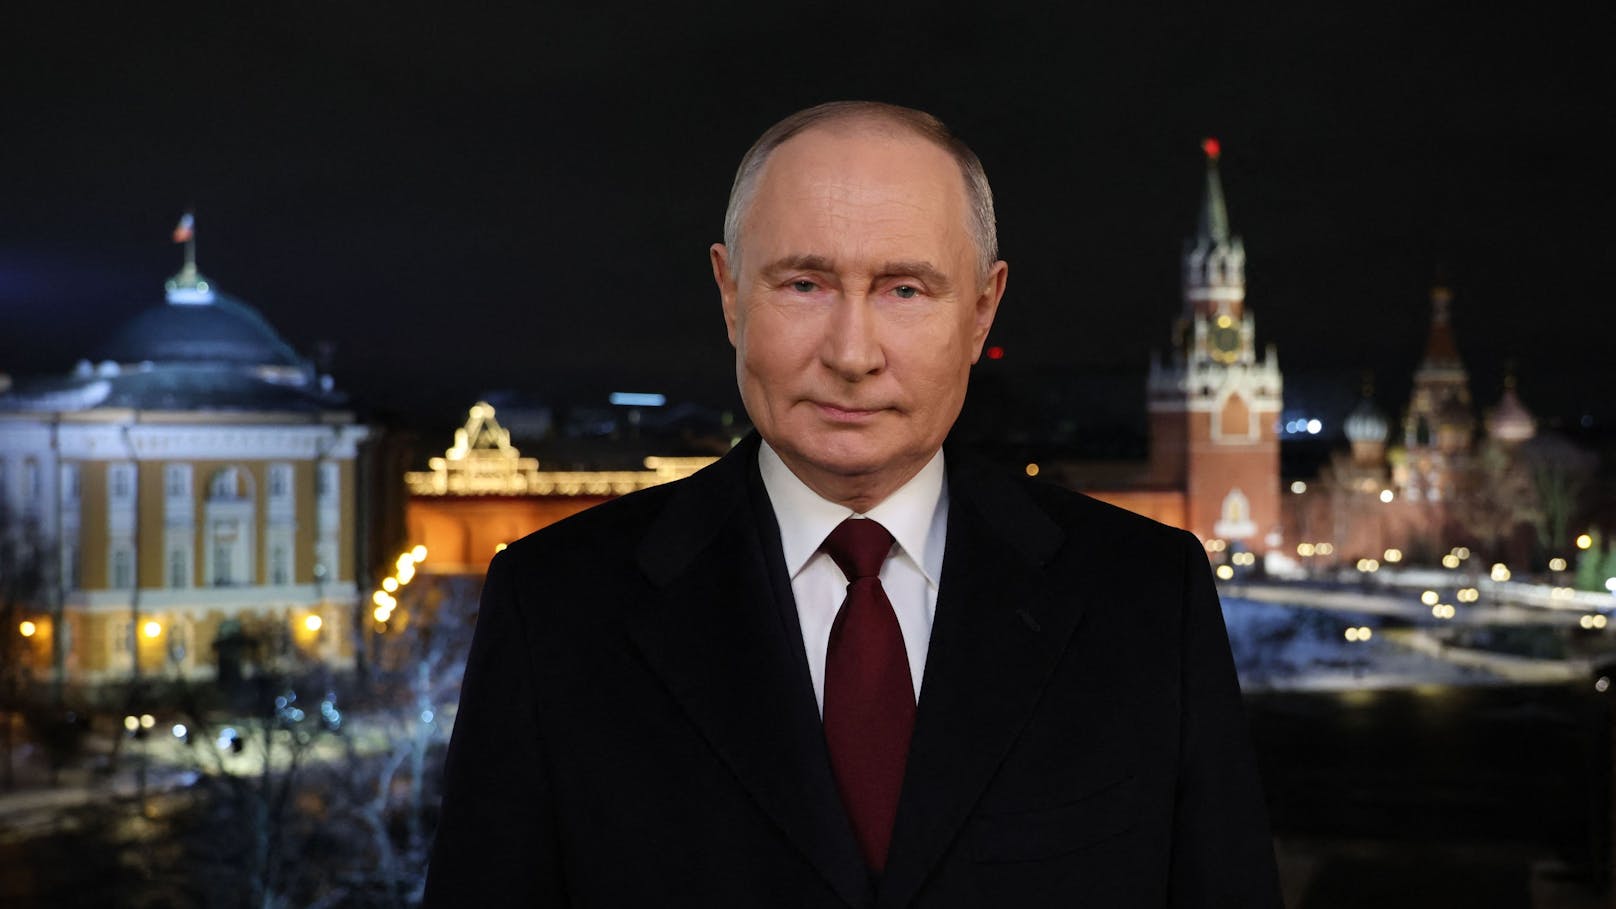 "Werden niemals zurückweichen" – neue Putin-Ansage